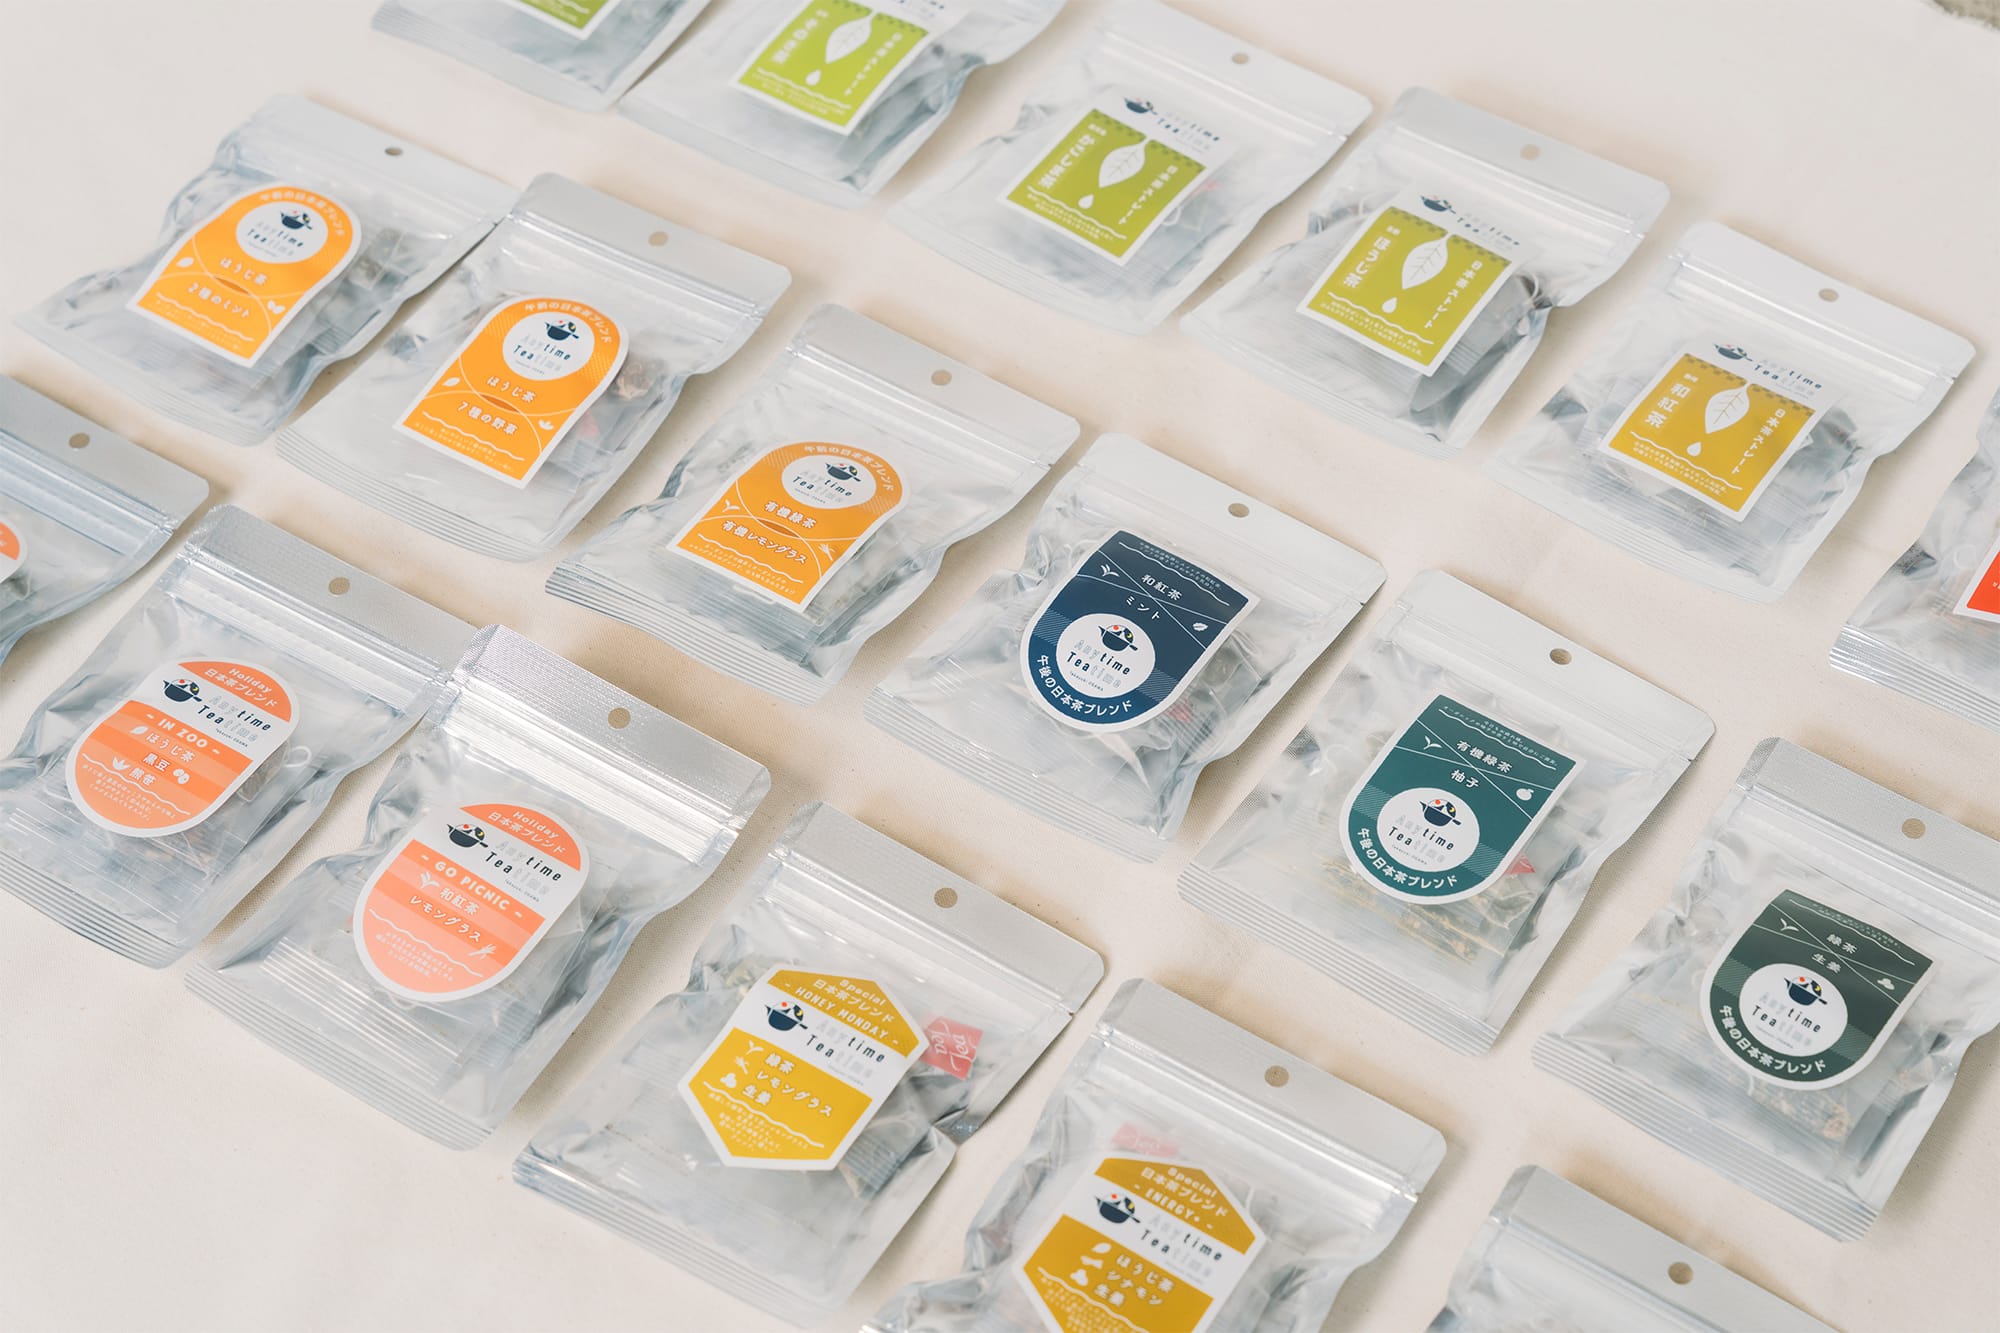 日本茶ブランド「Anytime Teatime」は全18種類。